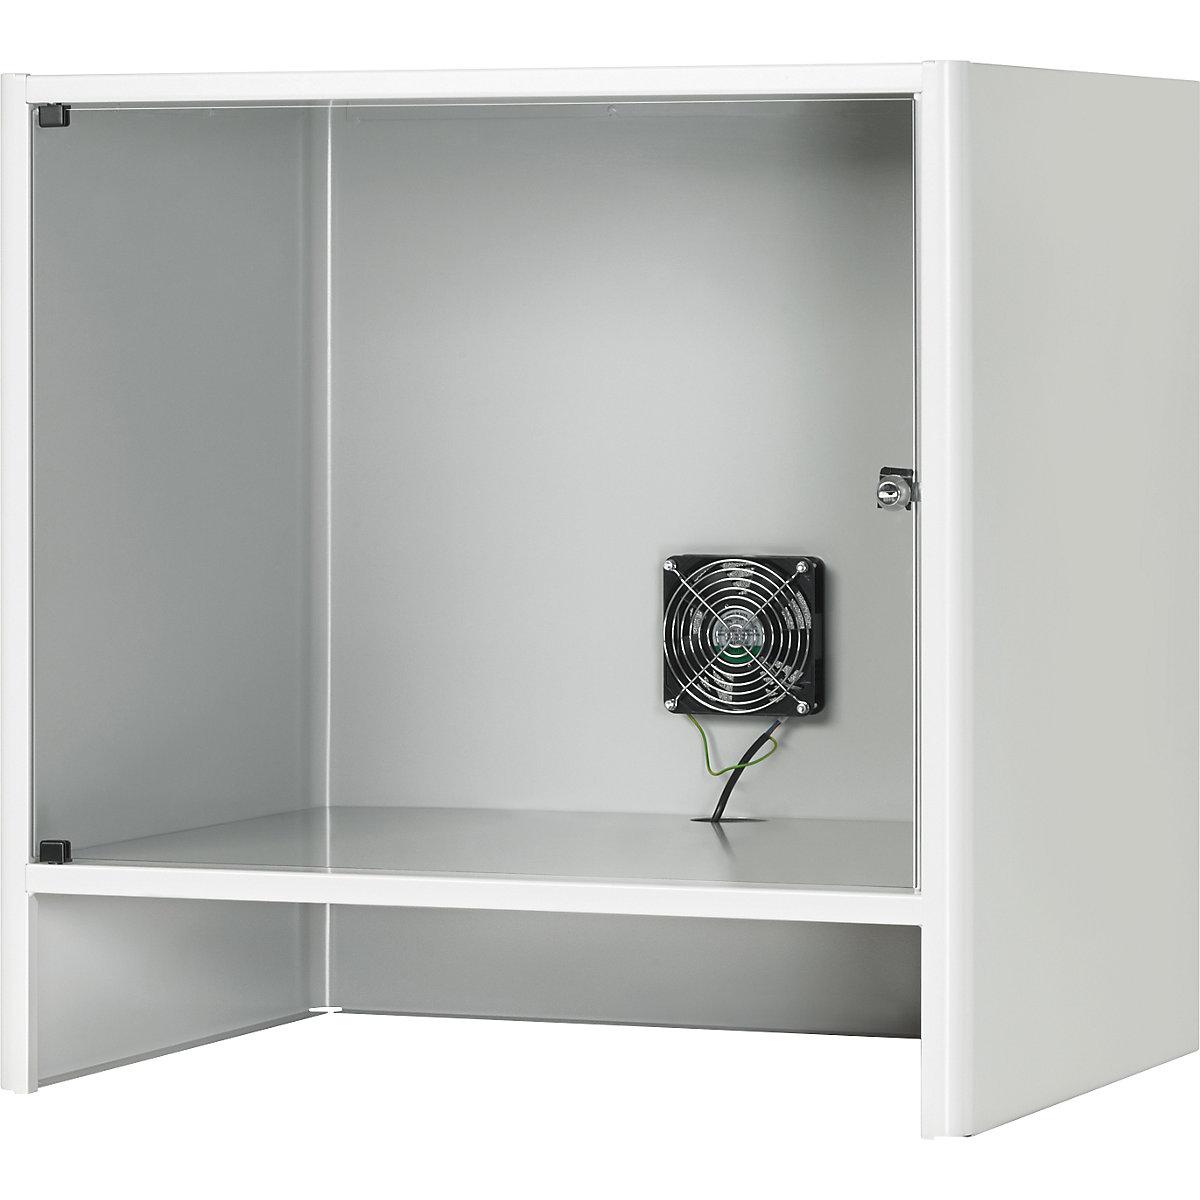 Kućište za monitor s integriranim aktivnim ventilatorom – RAU